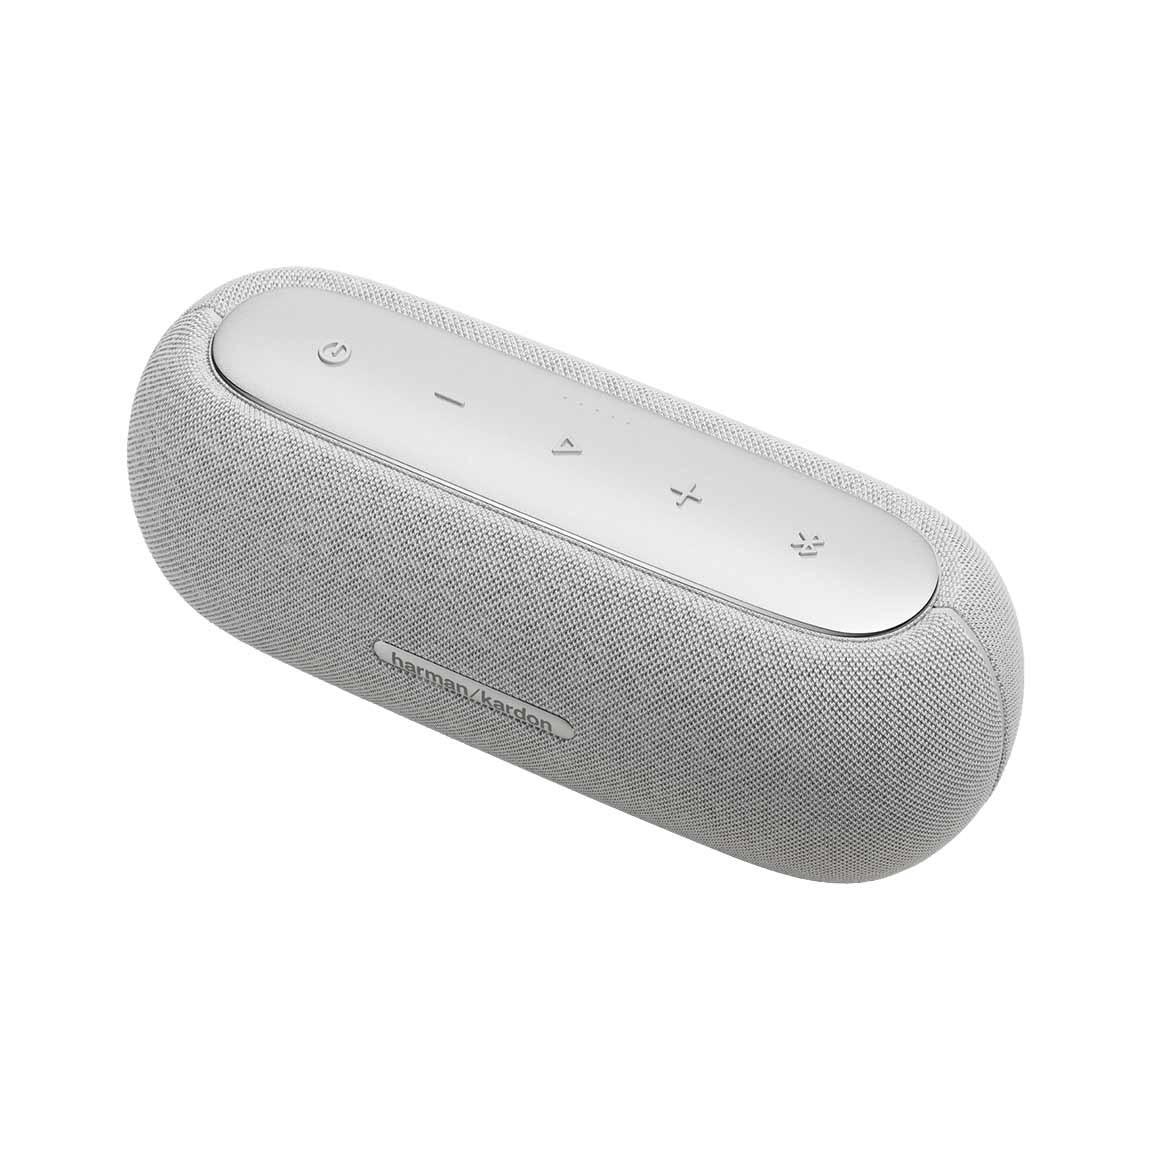 Harman Kardon Luna - Tragbarer Bluetooth Lautsprecher - Weiß_schräg_2